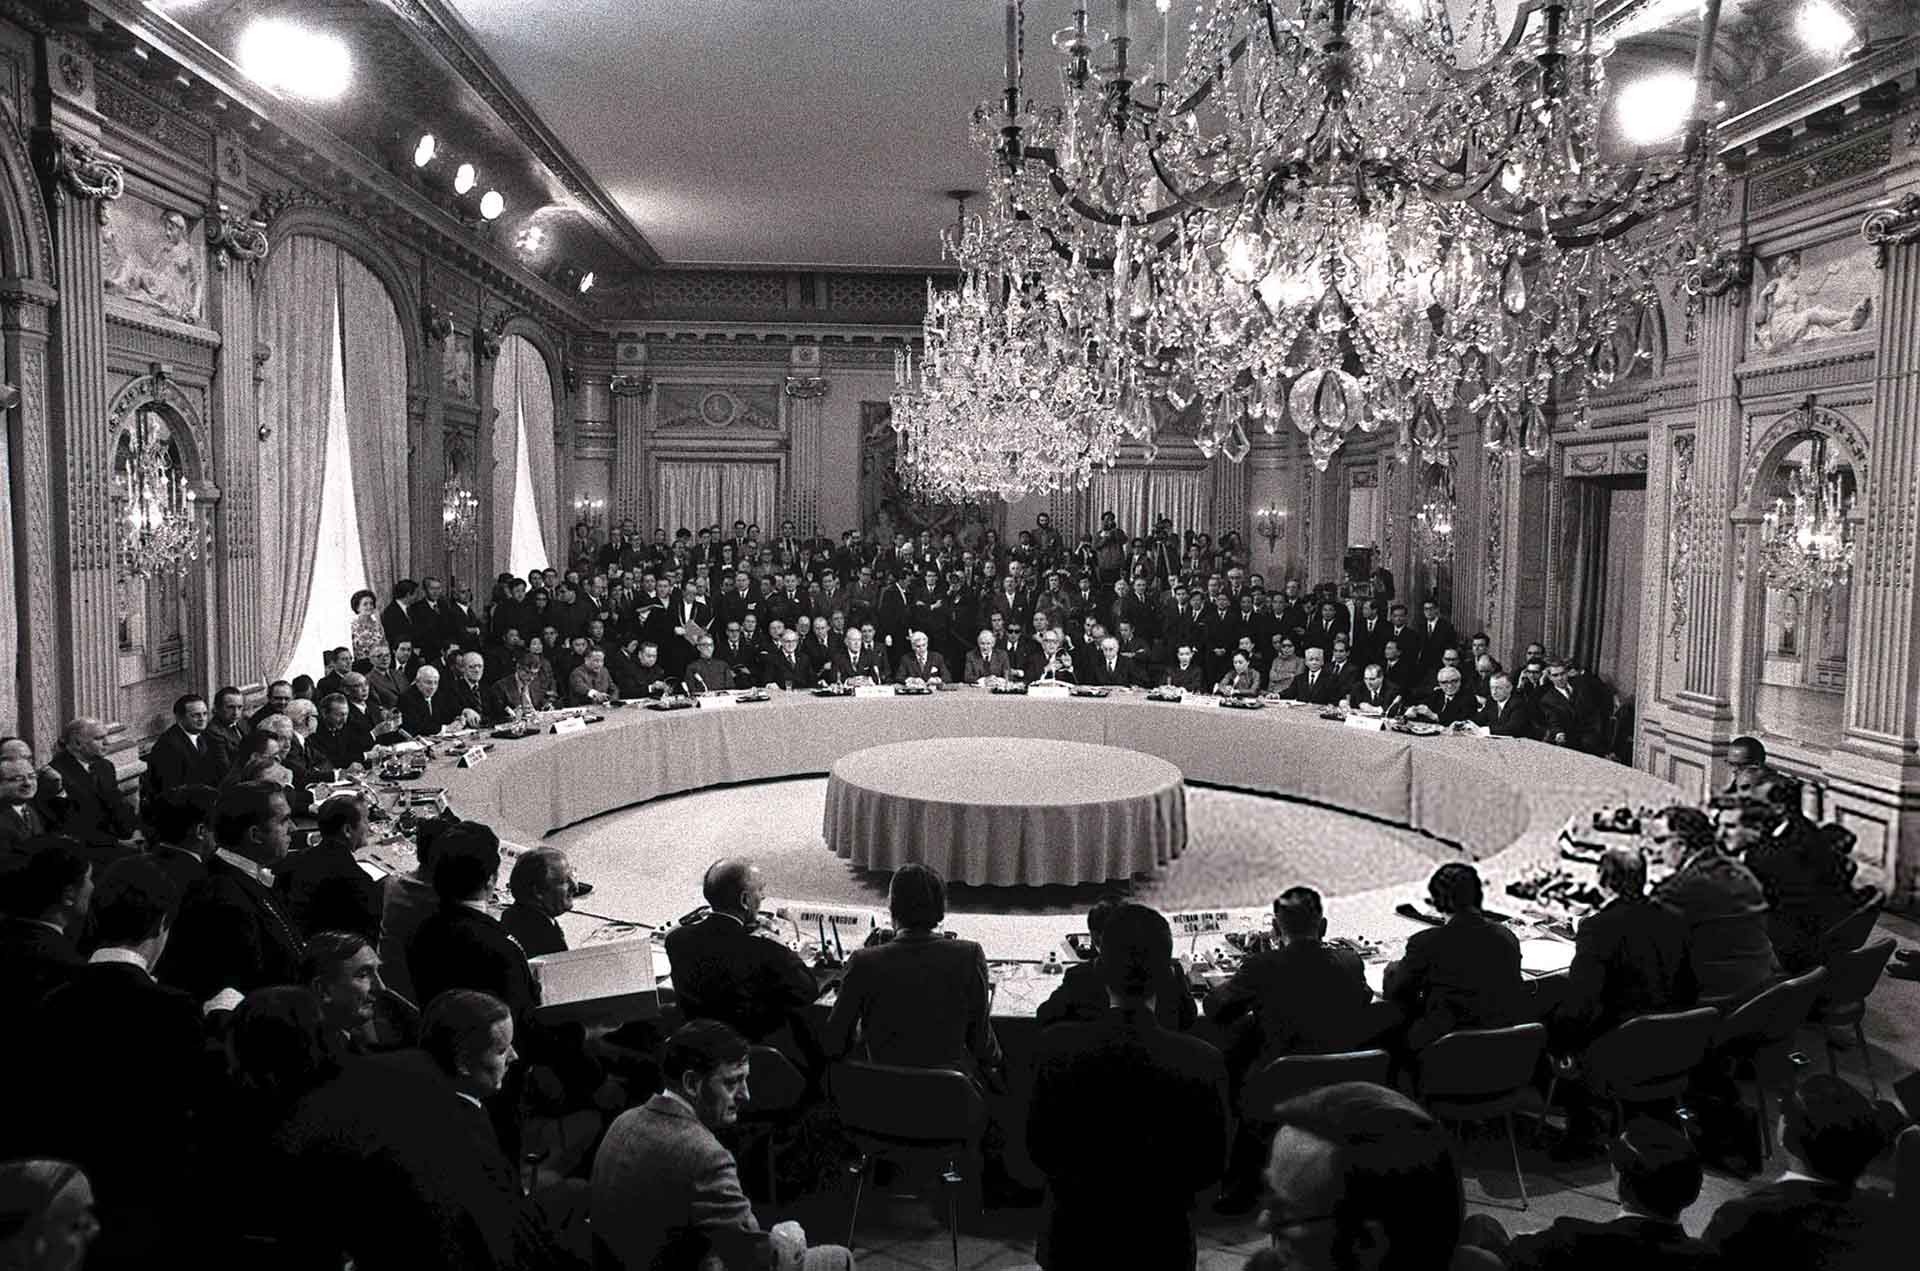 Hội nghị Định ước quốc tế về Hiệp định Paris về Việt Nam được tổ chức tại Trung tâm Hội nghị quốc tế trên Đại lộ Kléber (Paris), ngày 2/3/1973, với sự tham dự đại diện của 12 nước và Liên hợp quốc. (Nguồn: Getty Images)